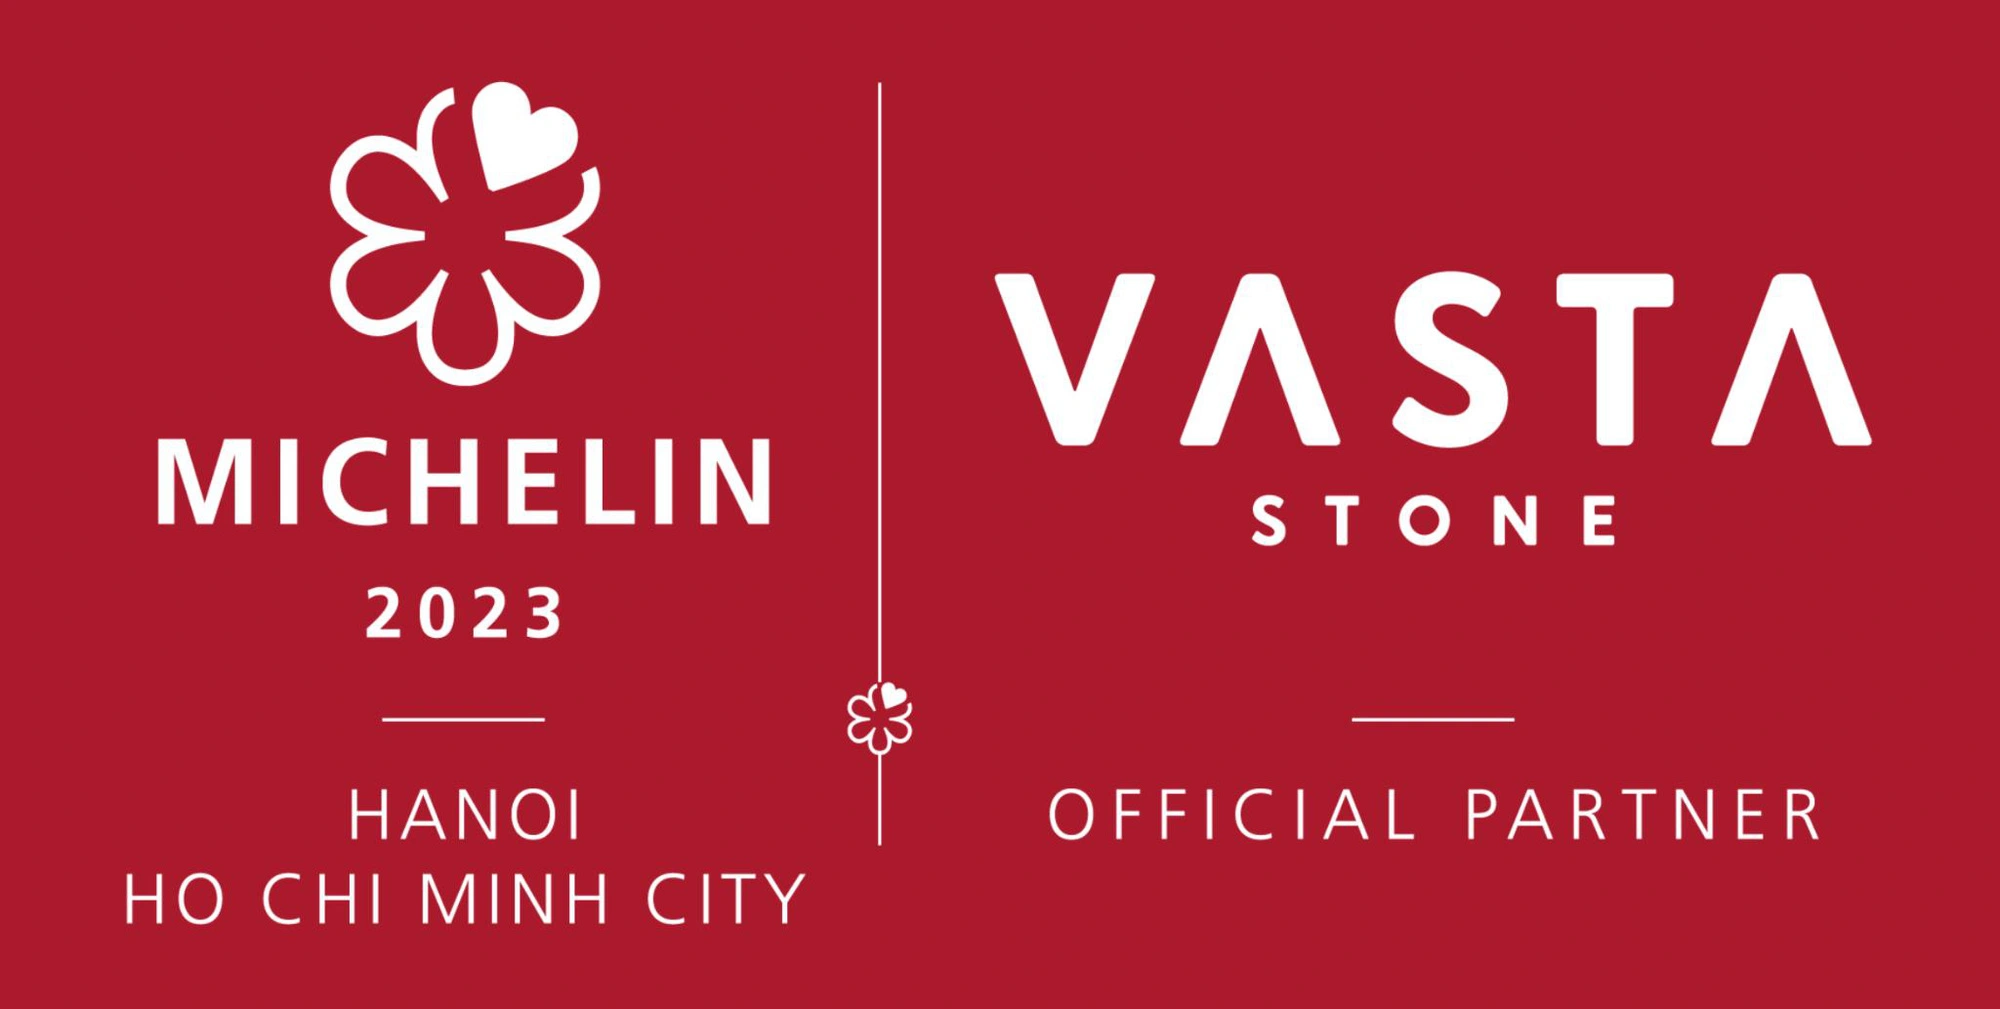 Vasta Stone hợp tác với MICHELIN Guide góp phần quảng bá ẩm thực danh giá của Việt Nam ra thế giới.